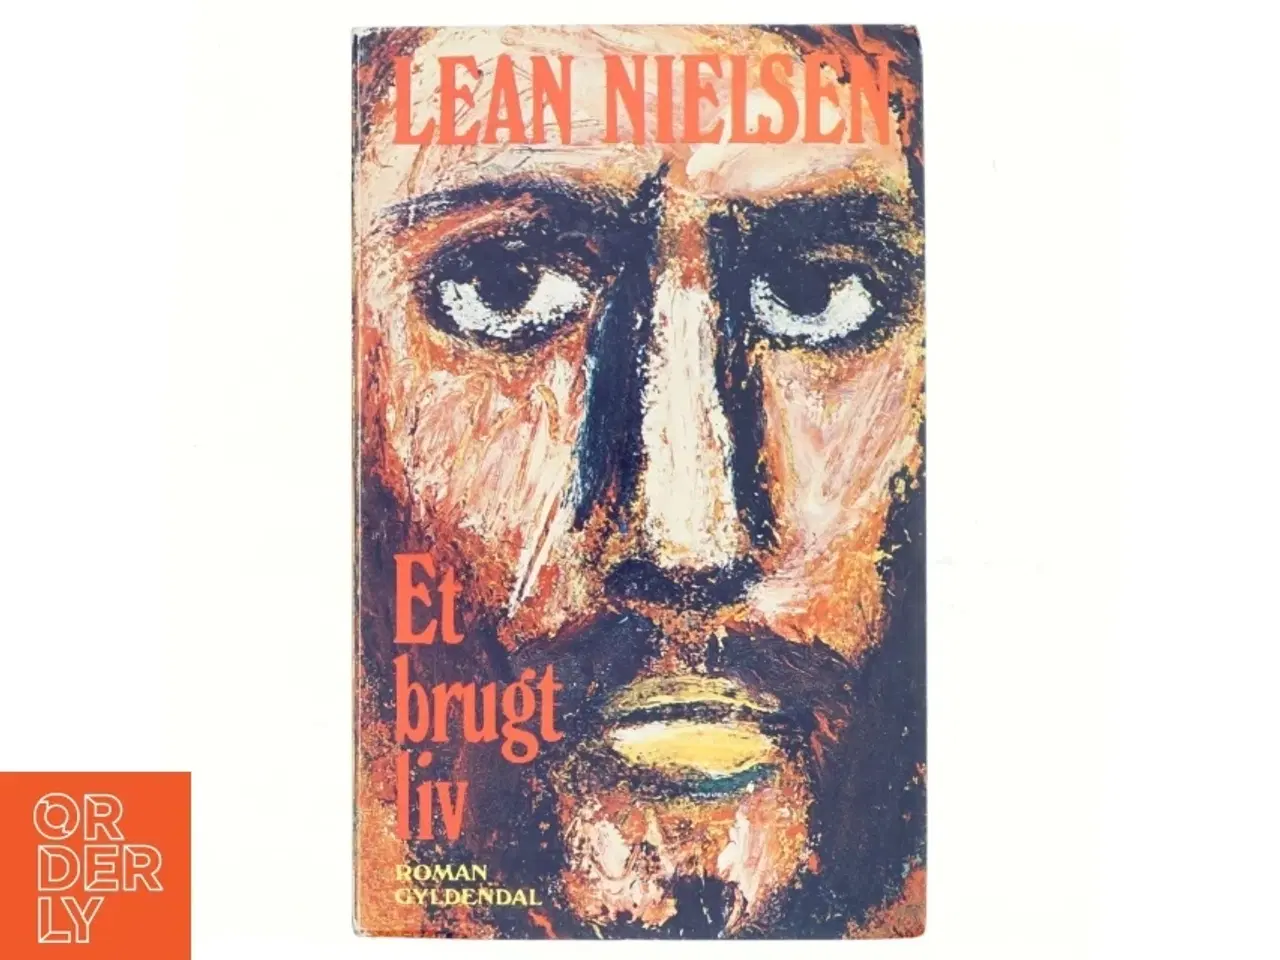 Billede 1 - Et brugt liv af Lean Nielsen (bog)